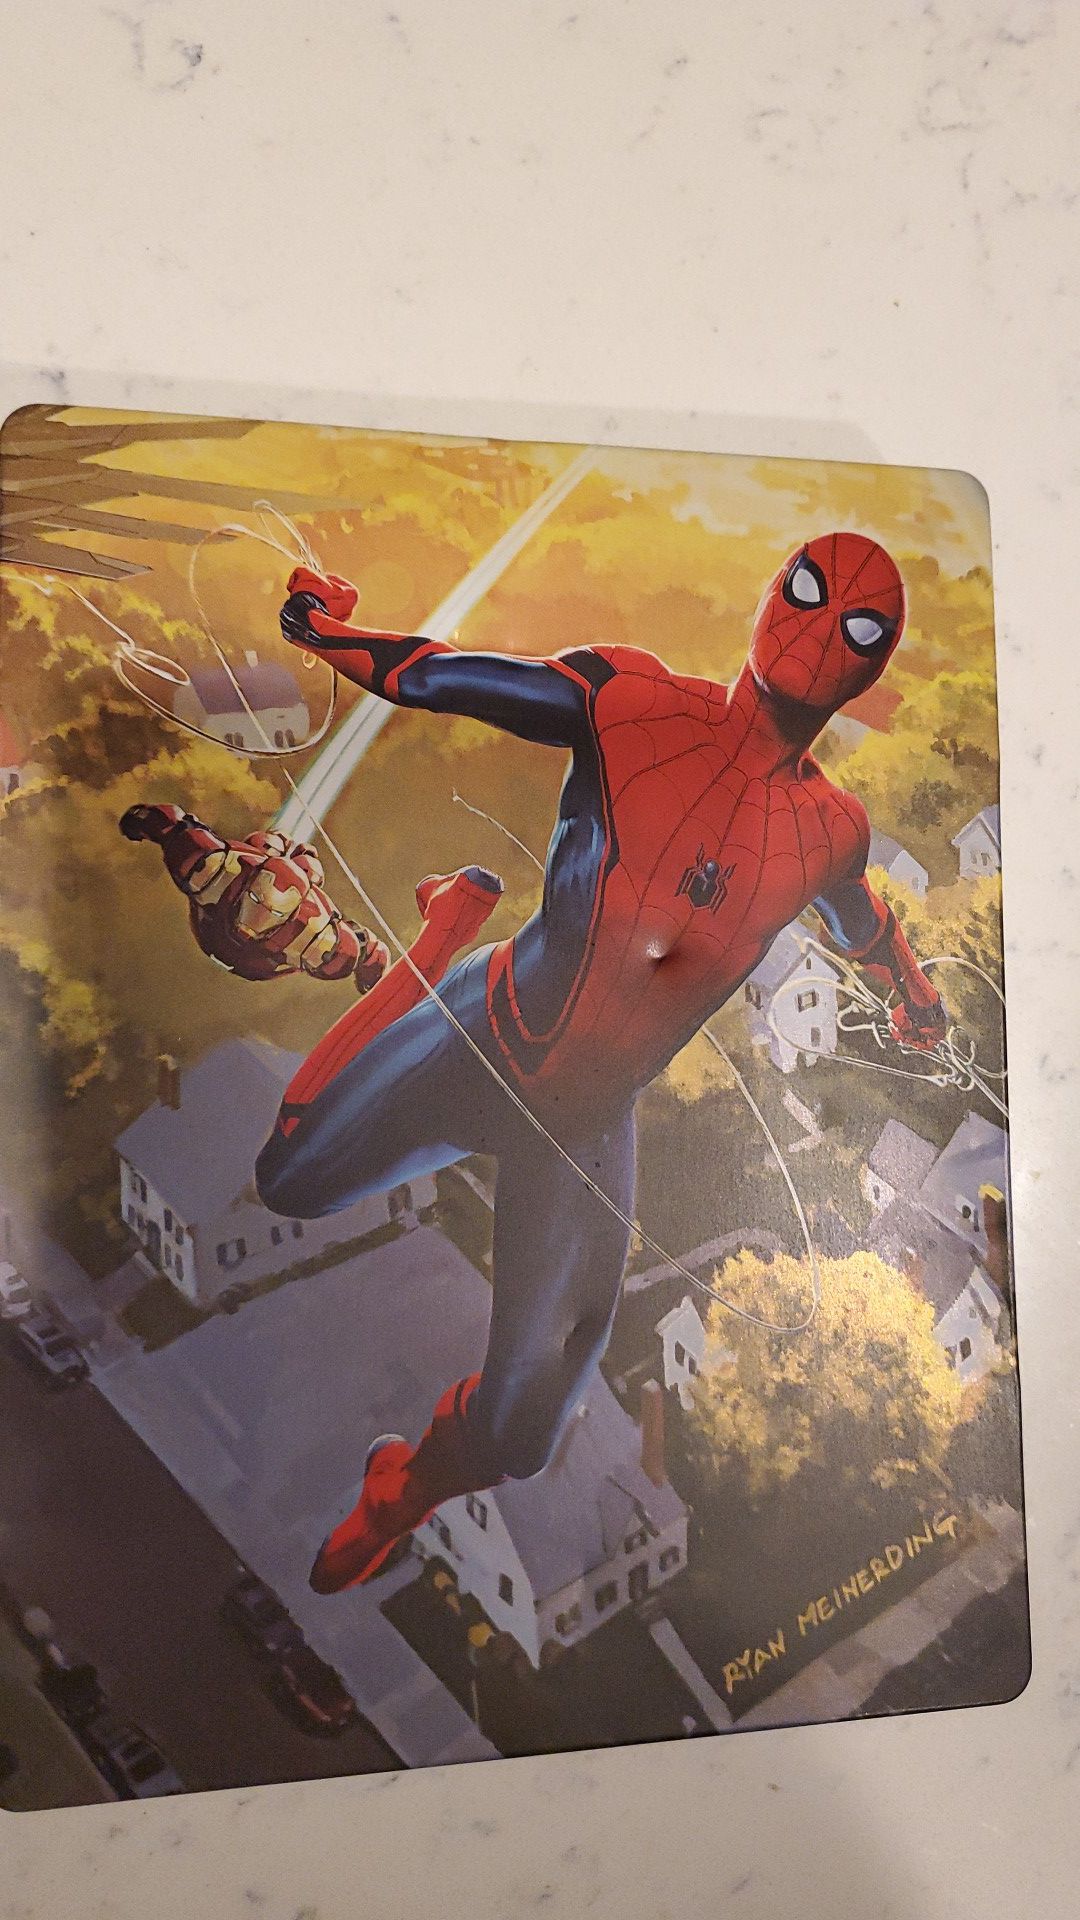 4k Steelbook Movie- Spiderman Homecoming